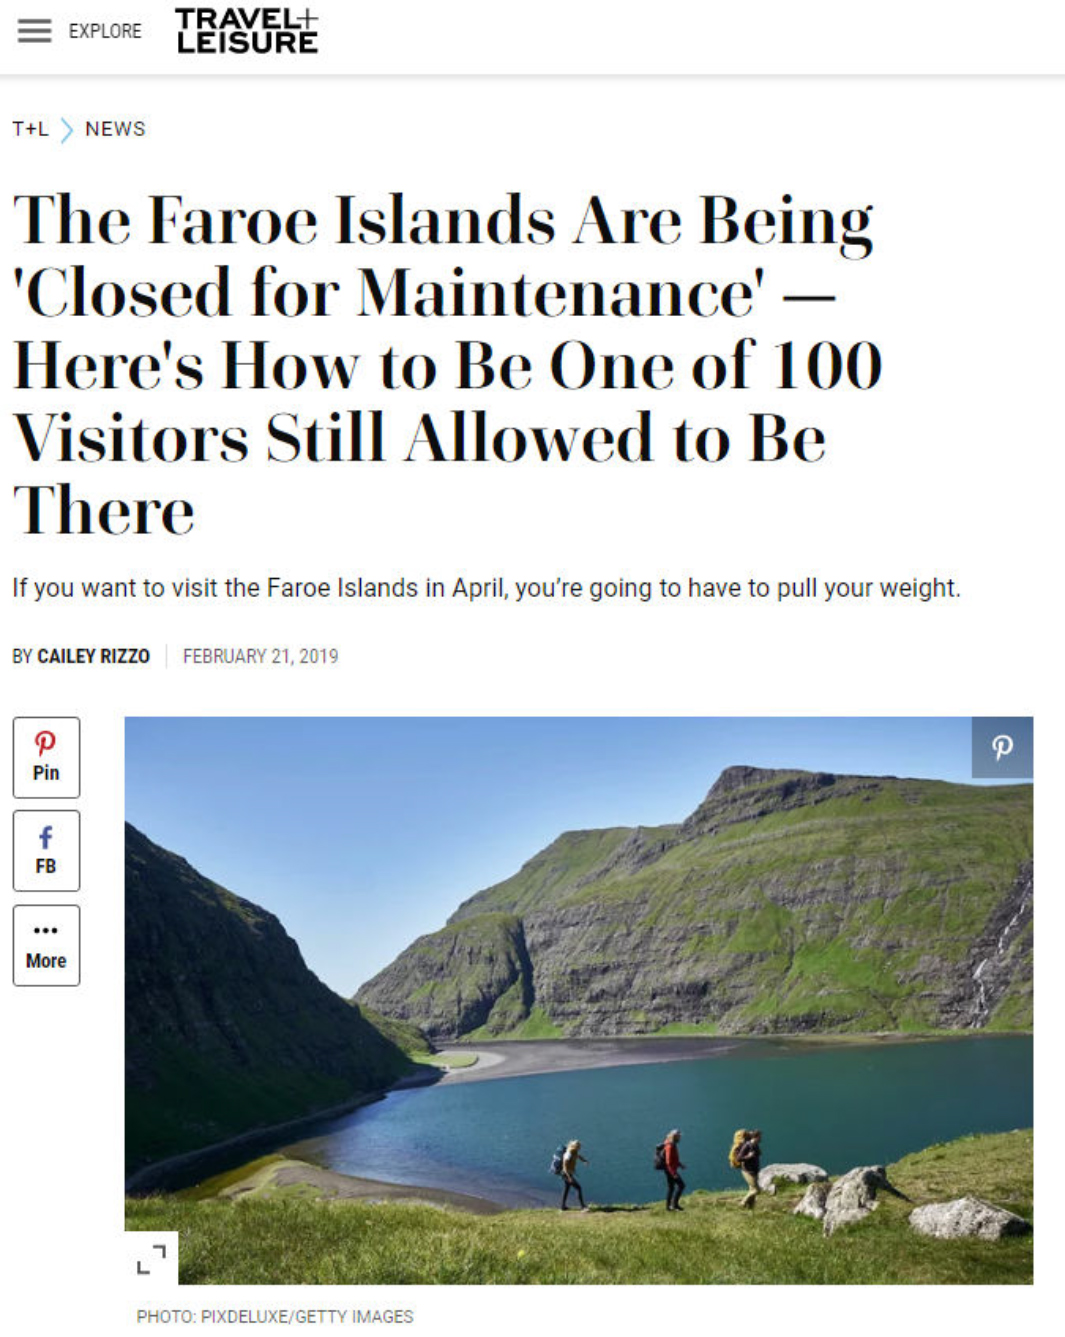 Faroe Islands Travel + Leisure-2.jpg